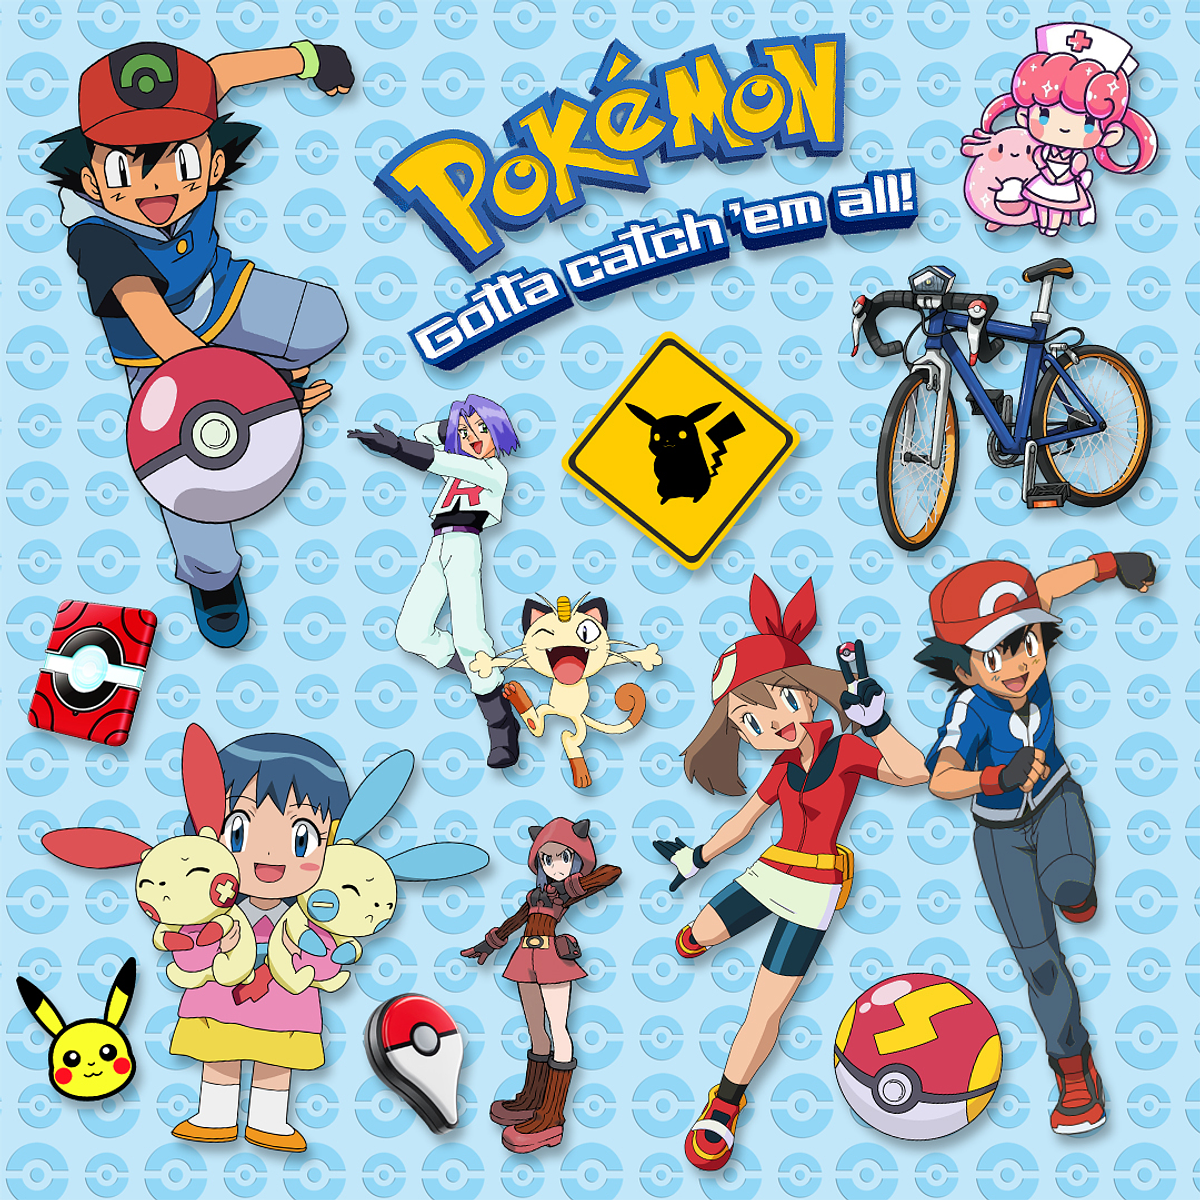 Pokémon Super Kit Digital Imagens em PNG